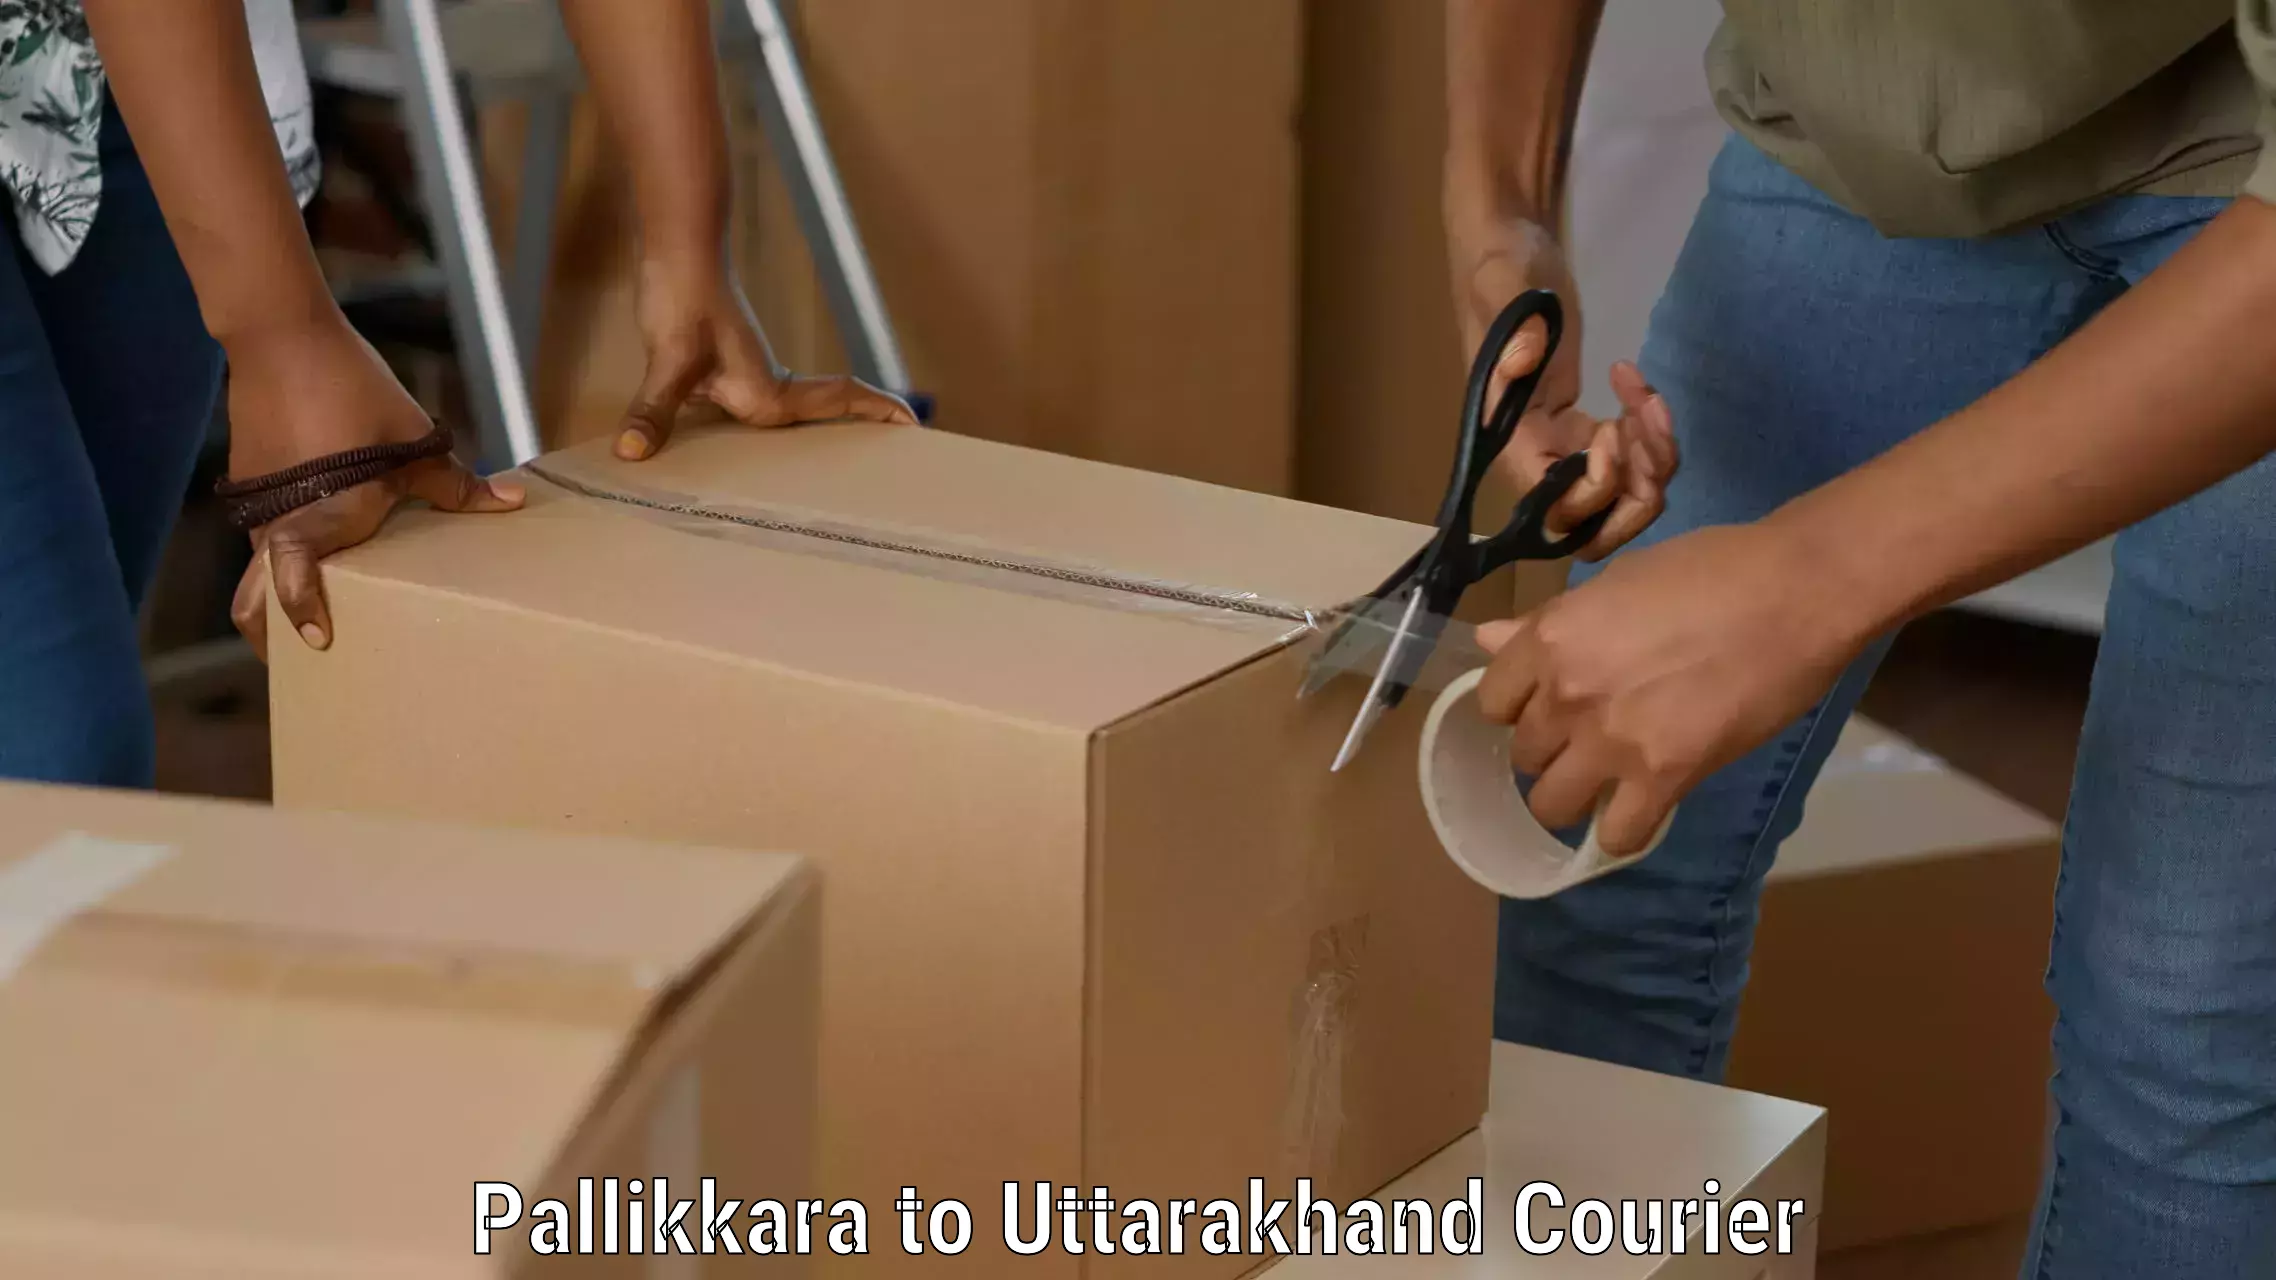 Courier tracking online Pallikkara to Uttarakhand